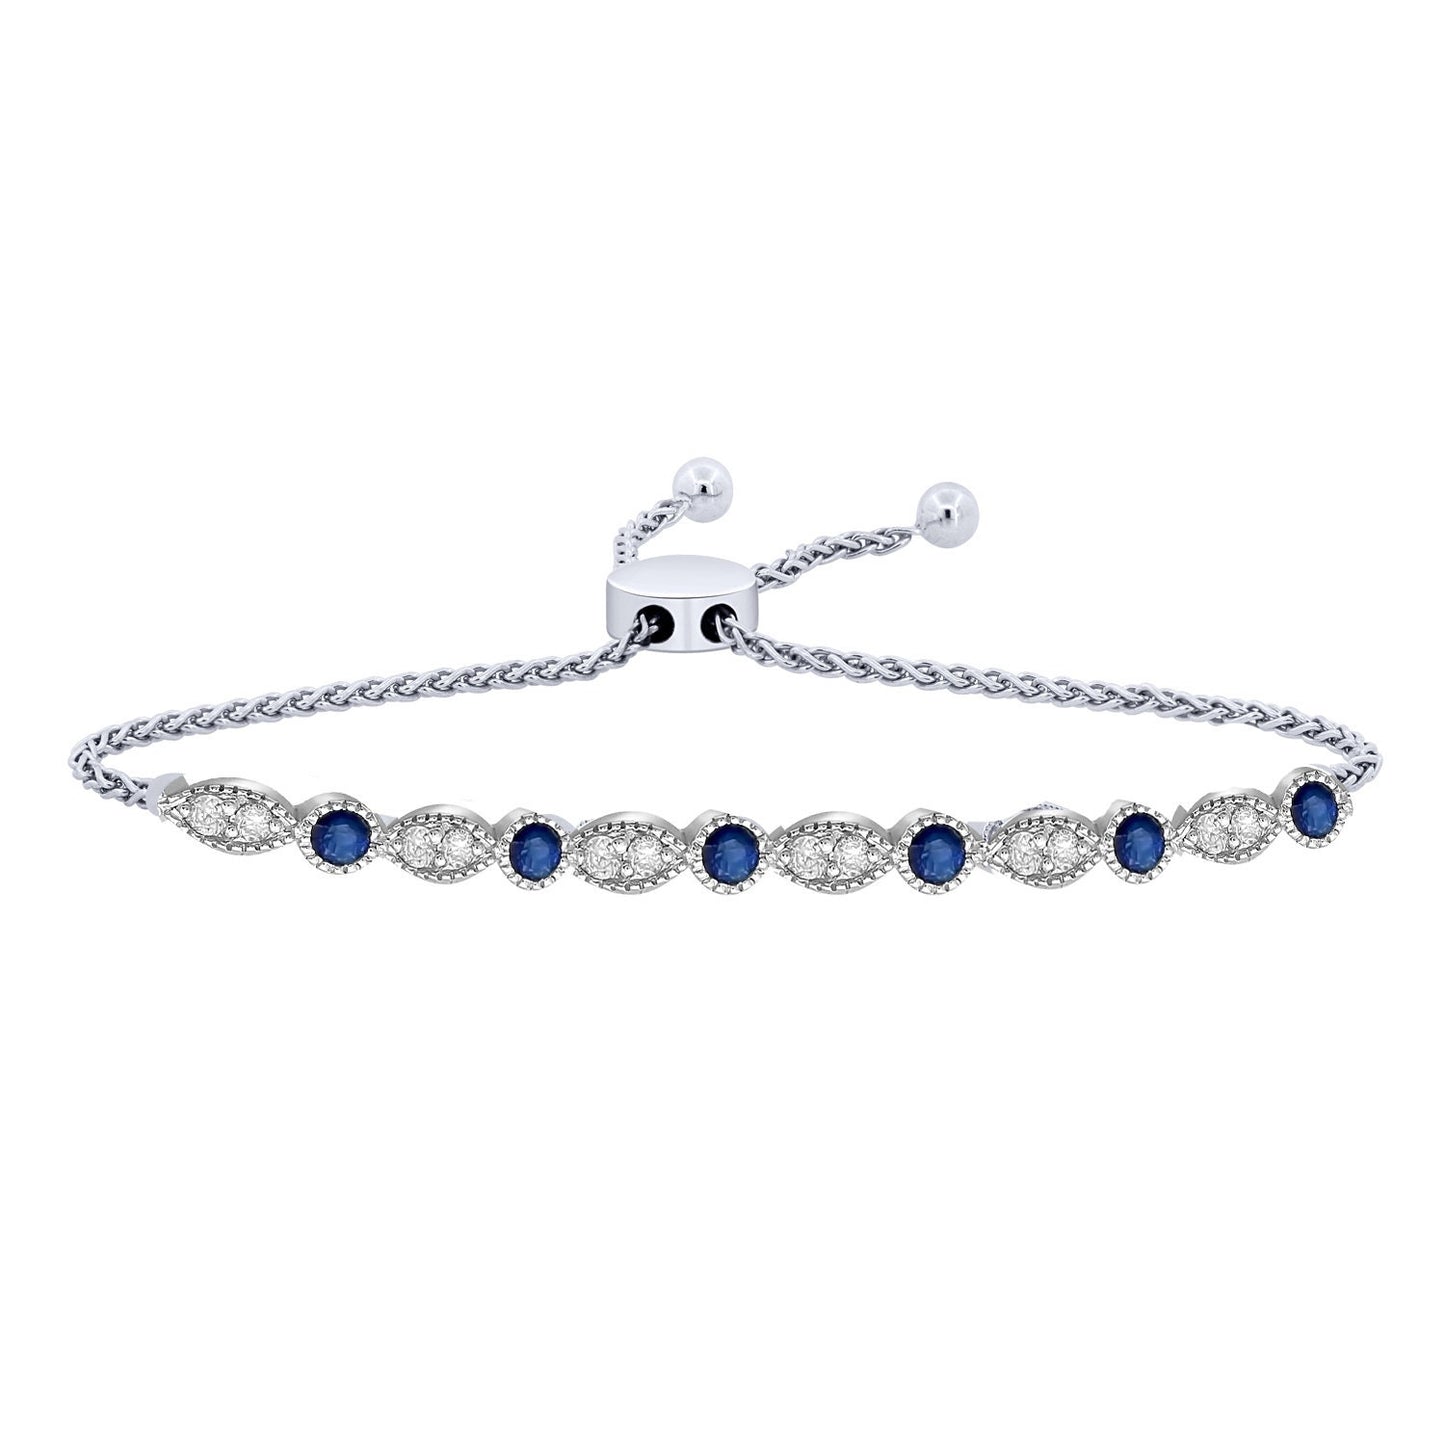 Moissanite Bolo Bracelet, Blue Sapphire and White Moissanite Gemstone Bolo Bracelet, Adjustable Bolo Bracelet, Perfect Gift For Women